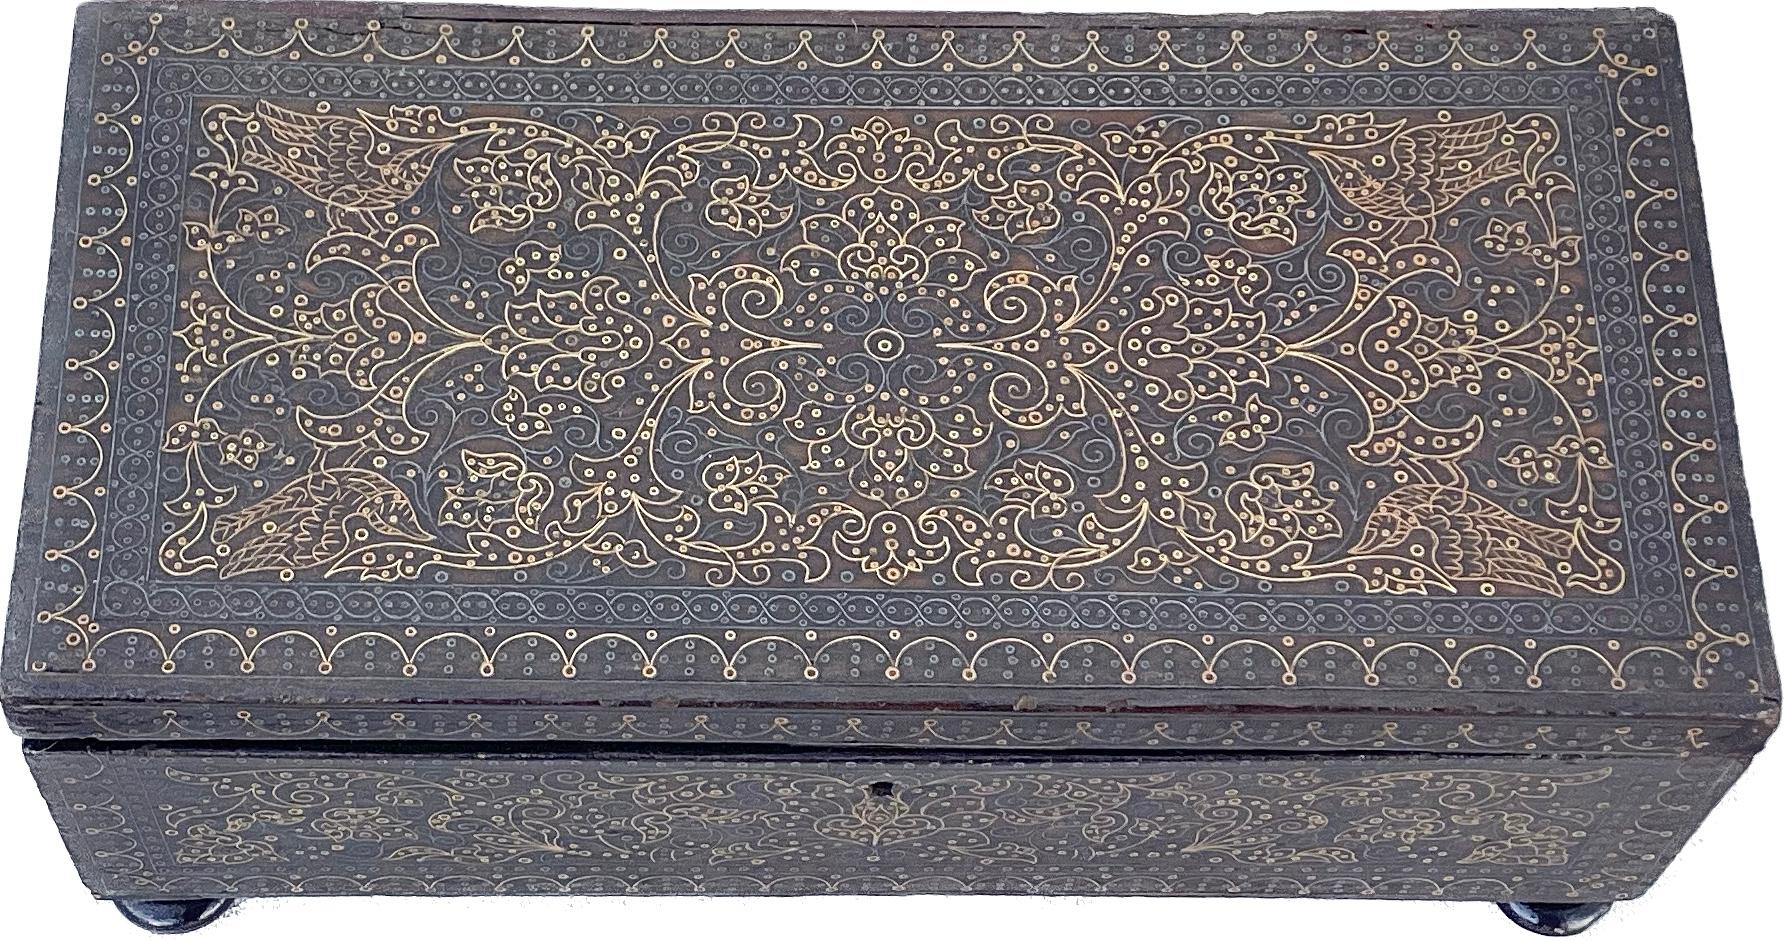 Boîte de commode anglo-indienne du XIXe siècle en argent et laiton incrusté de filigranes. Il s'agit d'une superbe boîte de commode, abondamment incrustée d'argent dans le bois selon un étonnant motif géométrique. Une pièce idéale pour ranger des